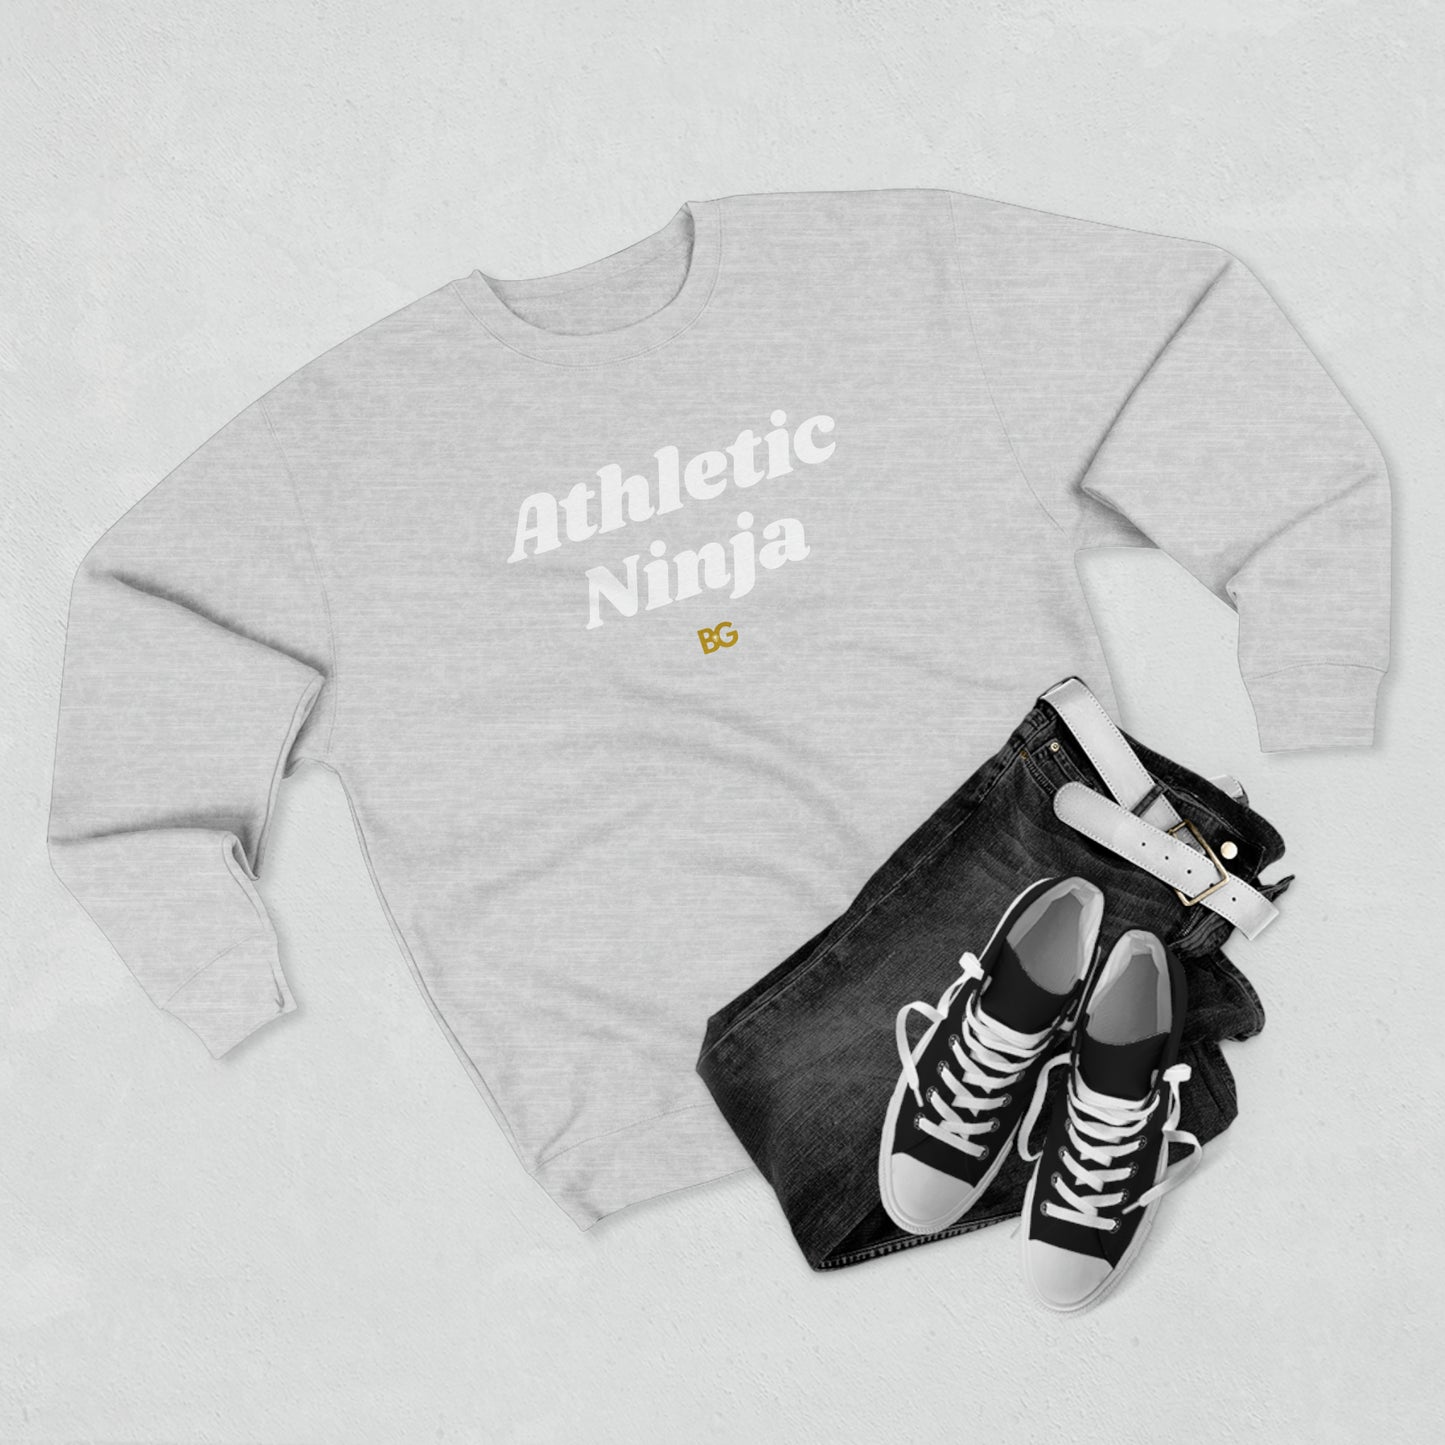 BG "Athletic Ninja" Premium Crewneck Sweatshirt